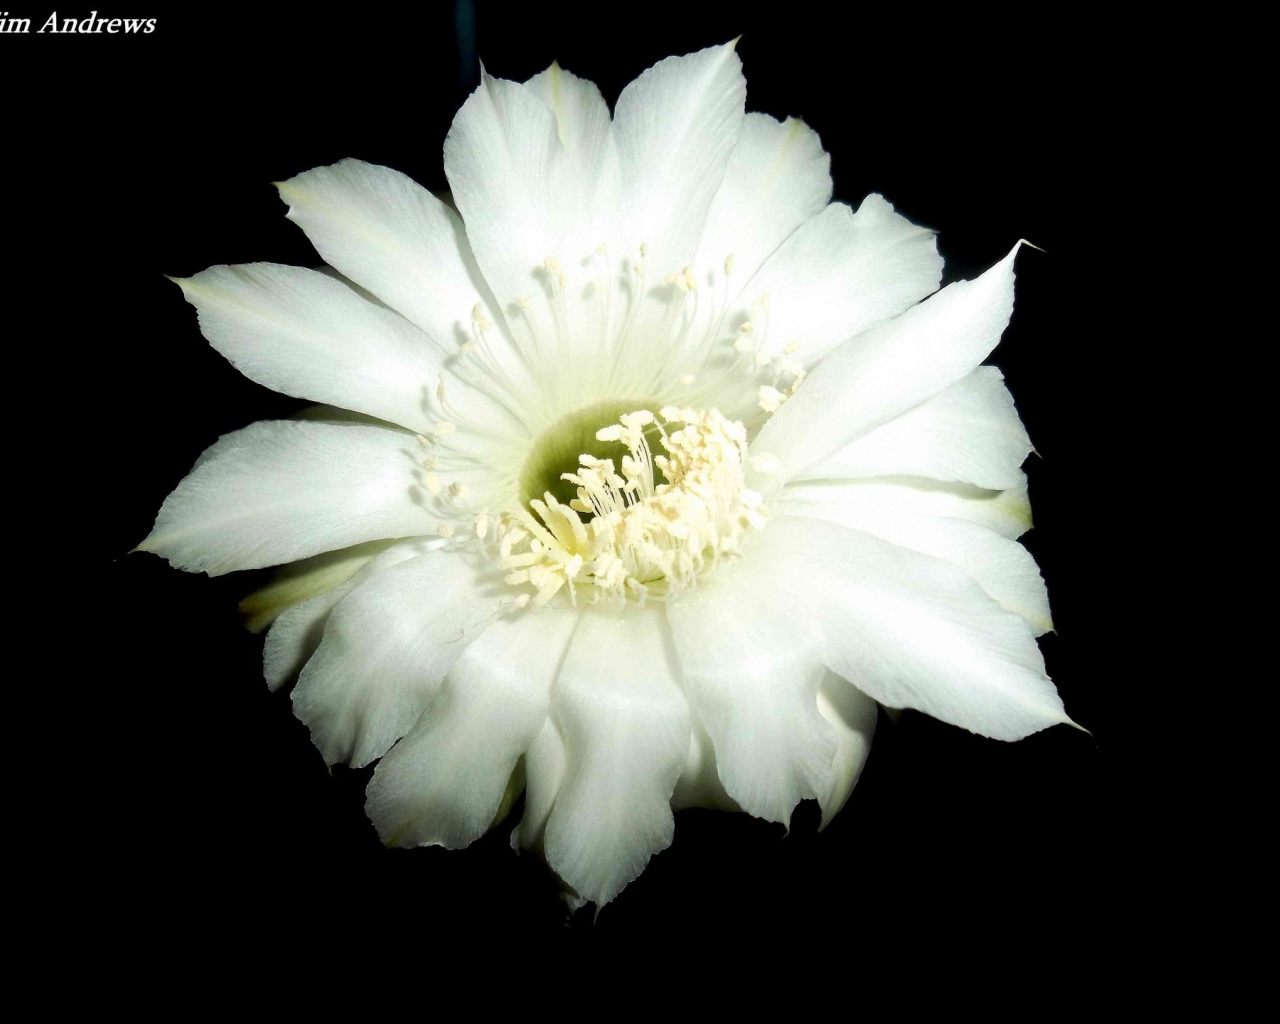 цветок, кактус, белый, красиво